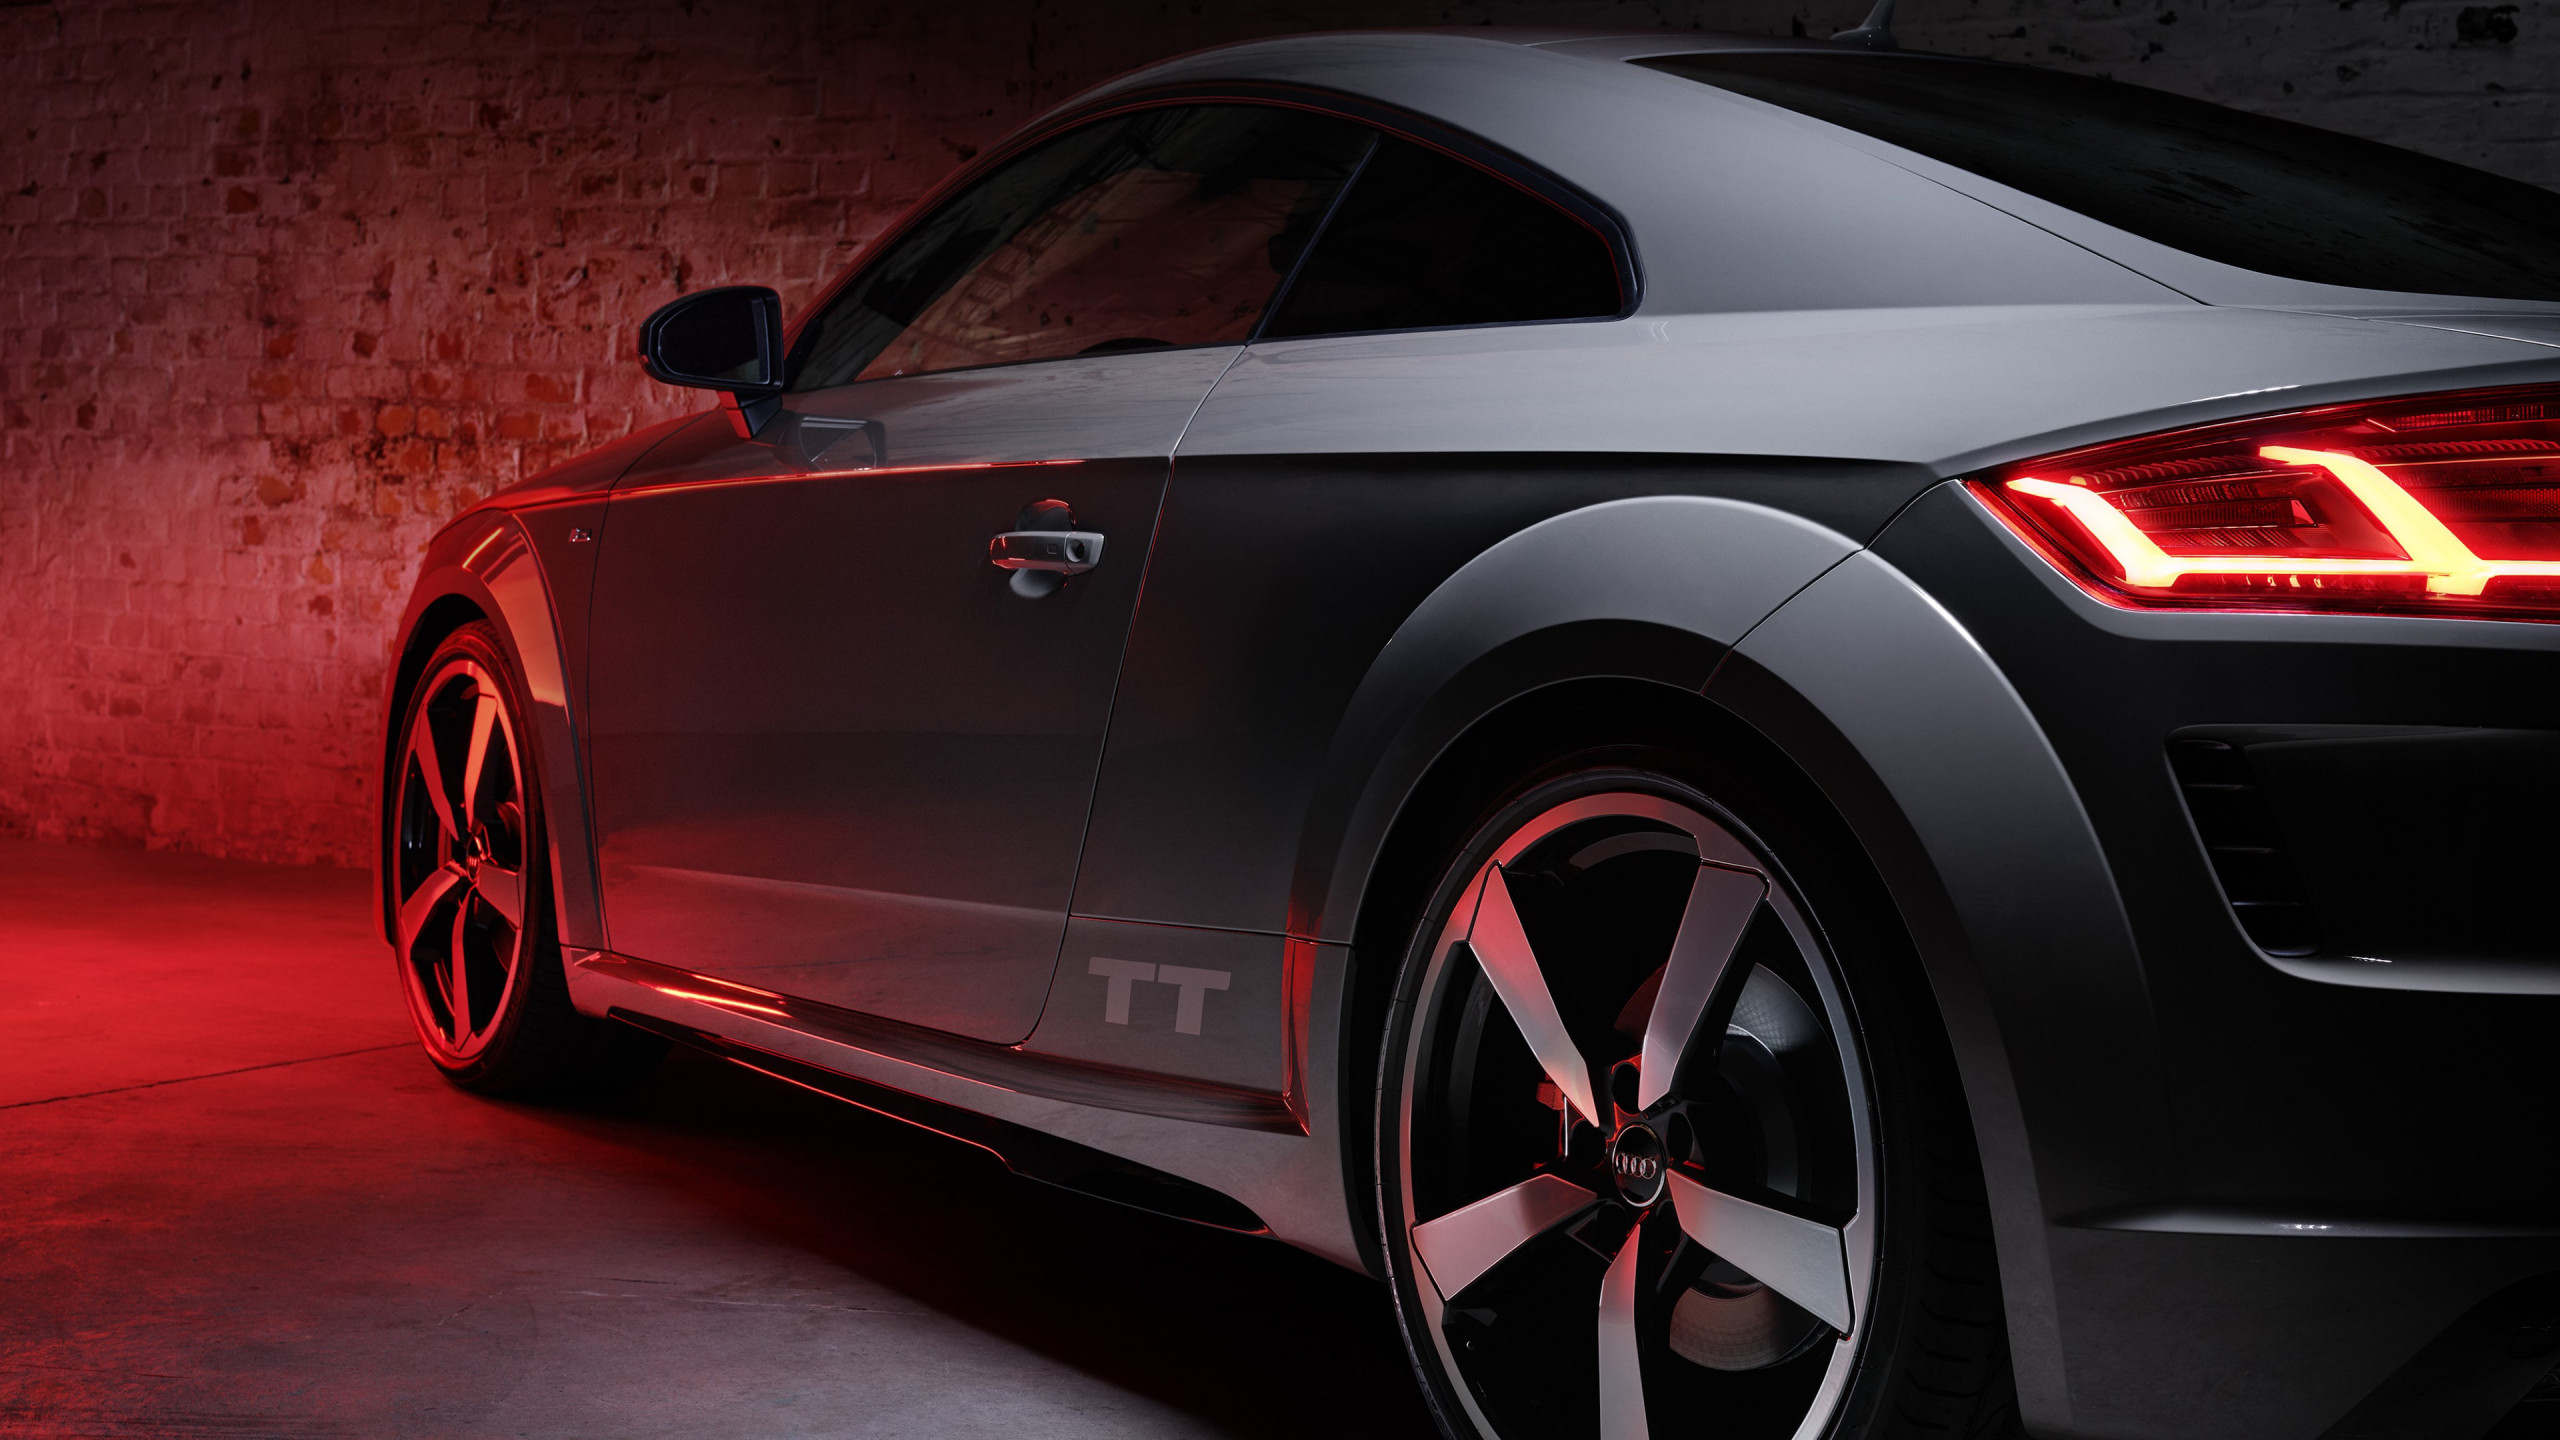 Download wallpaper: Audi TT Quantum Gray Edition 2560x1440